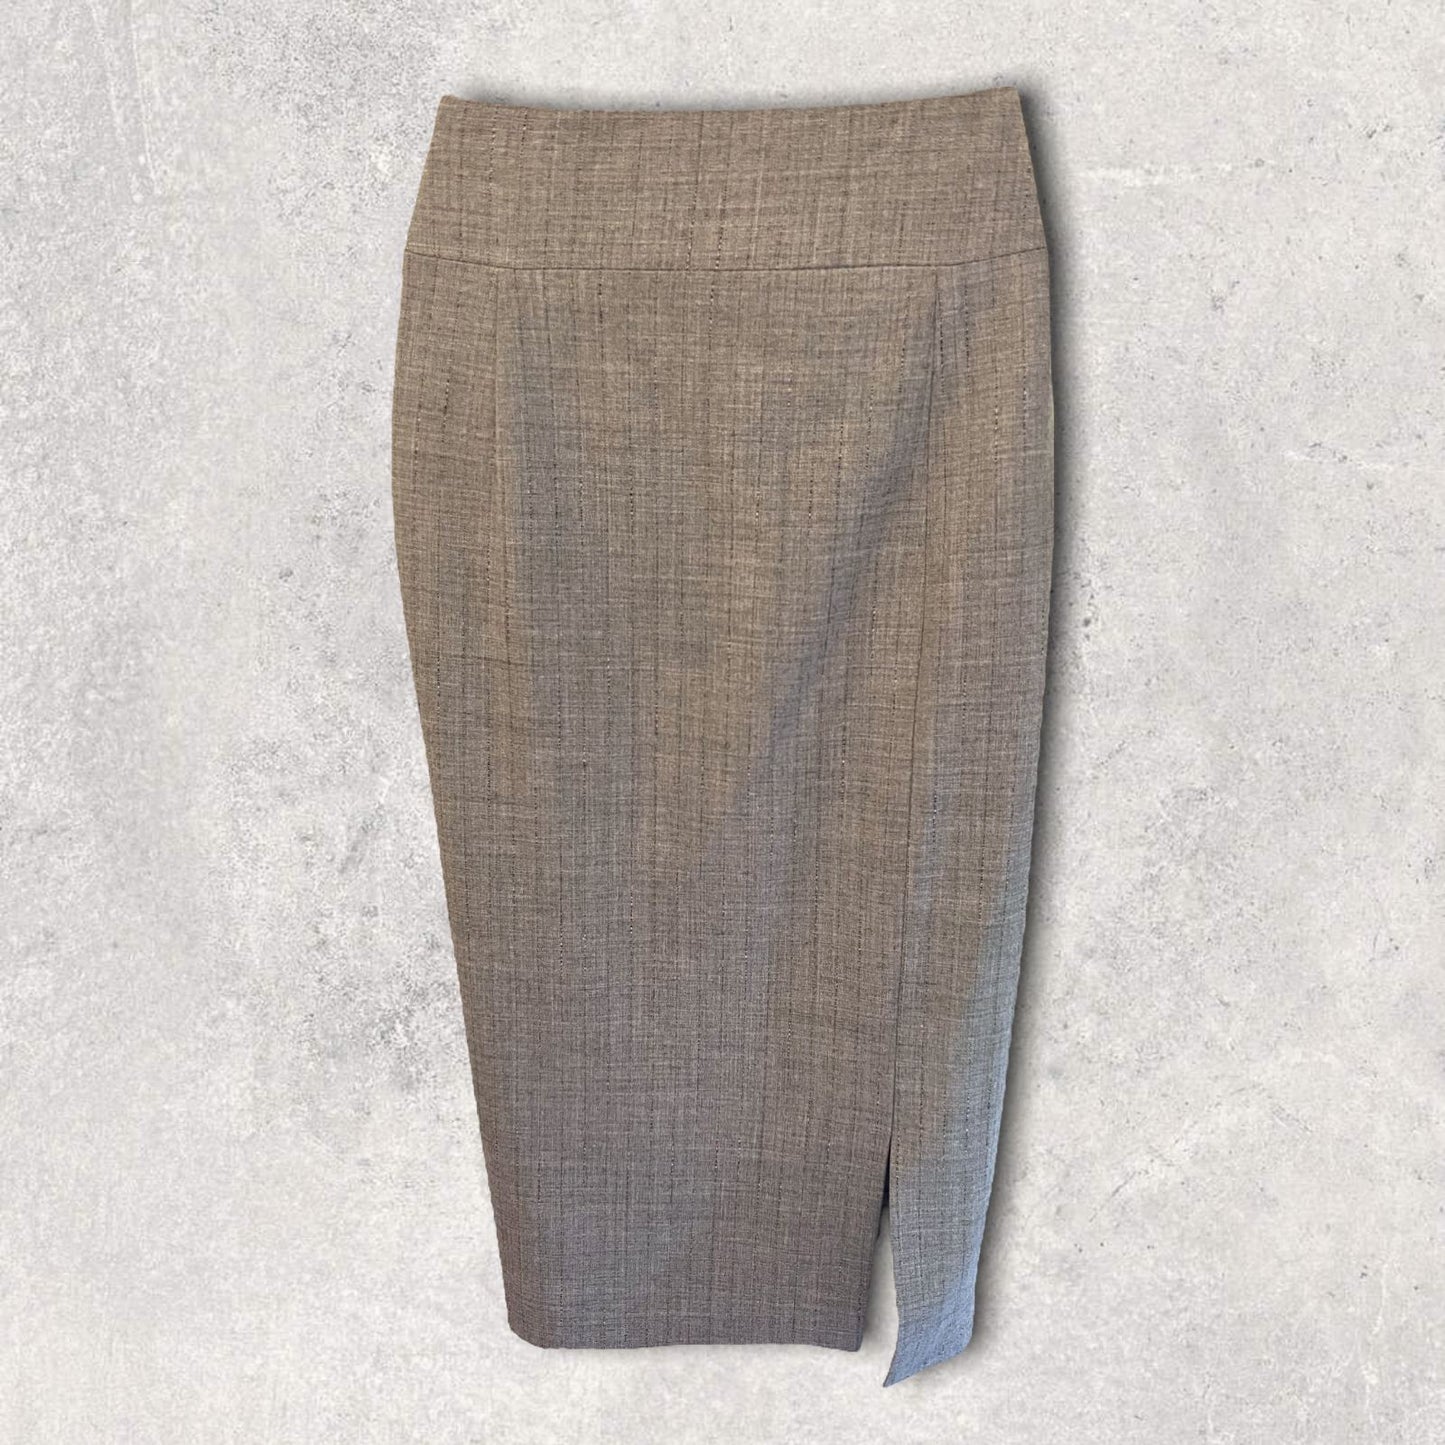 Zapa Grey Lightweight Viscous/Wool Blend Pencil Skirt UK 12 US 8 EU 40 RRP £175 Timeless Fashions